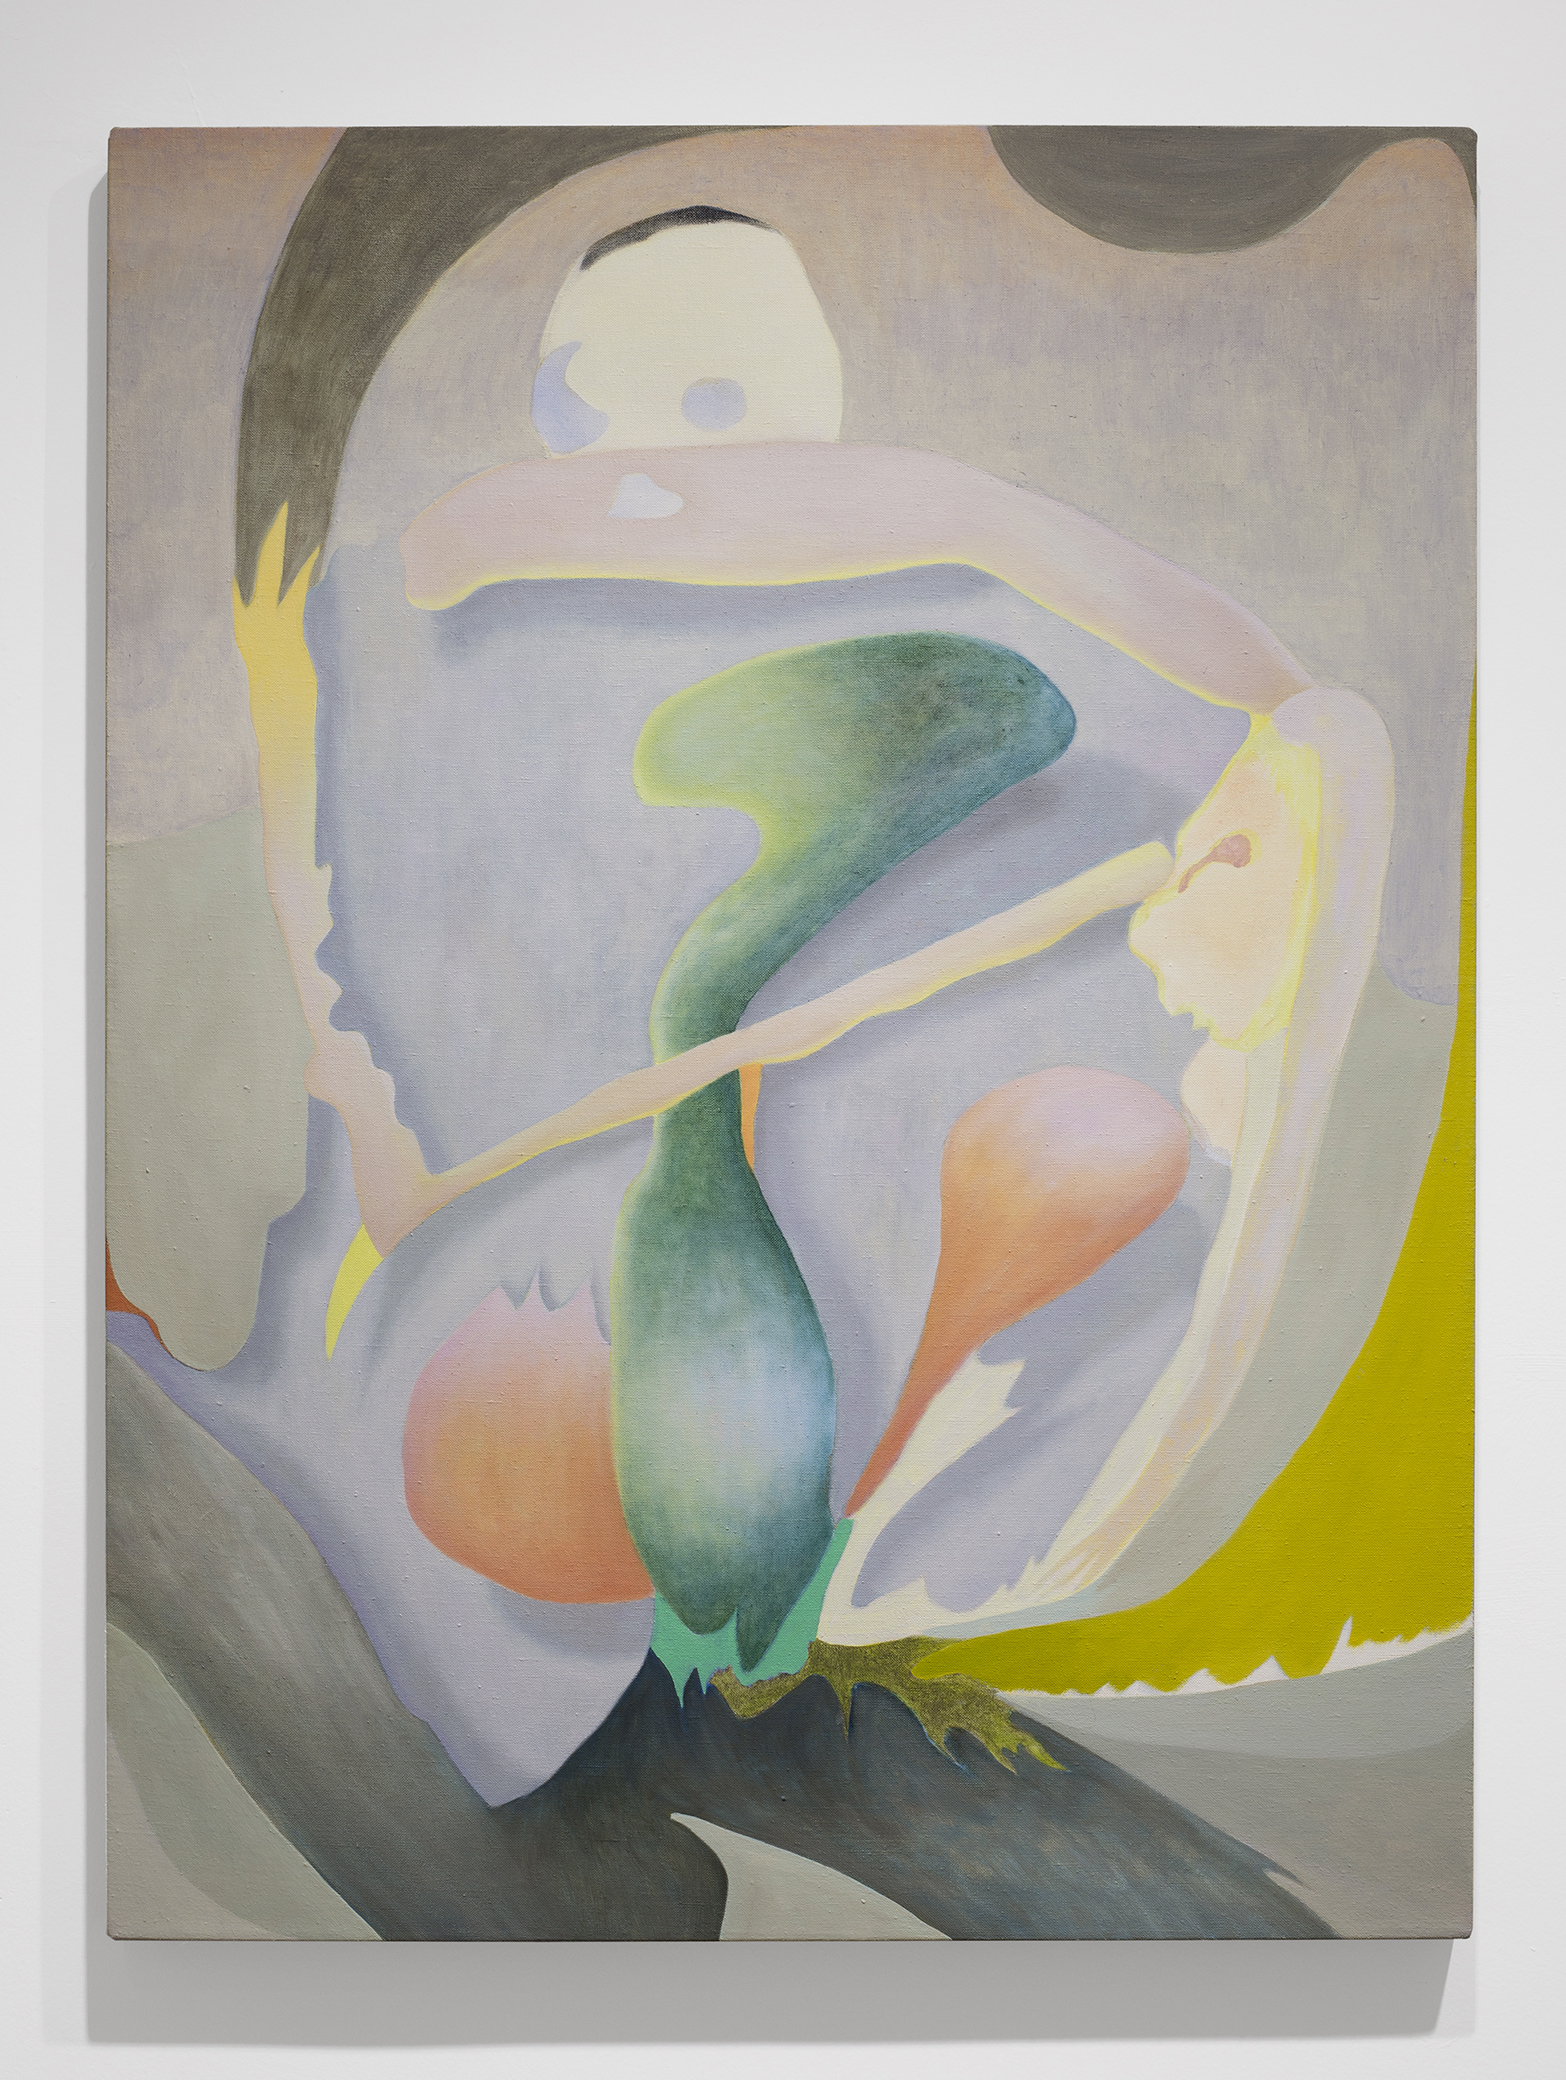 Akira Toxqui, Humo, 2019, pintura acrílica, óleo y lápiz de color sobre lino, 81 x 61 cm. Cortesía de Archivo Colectivo